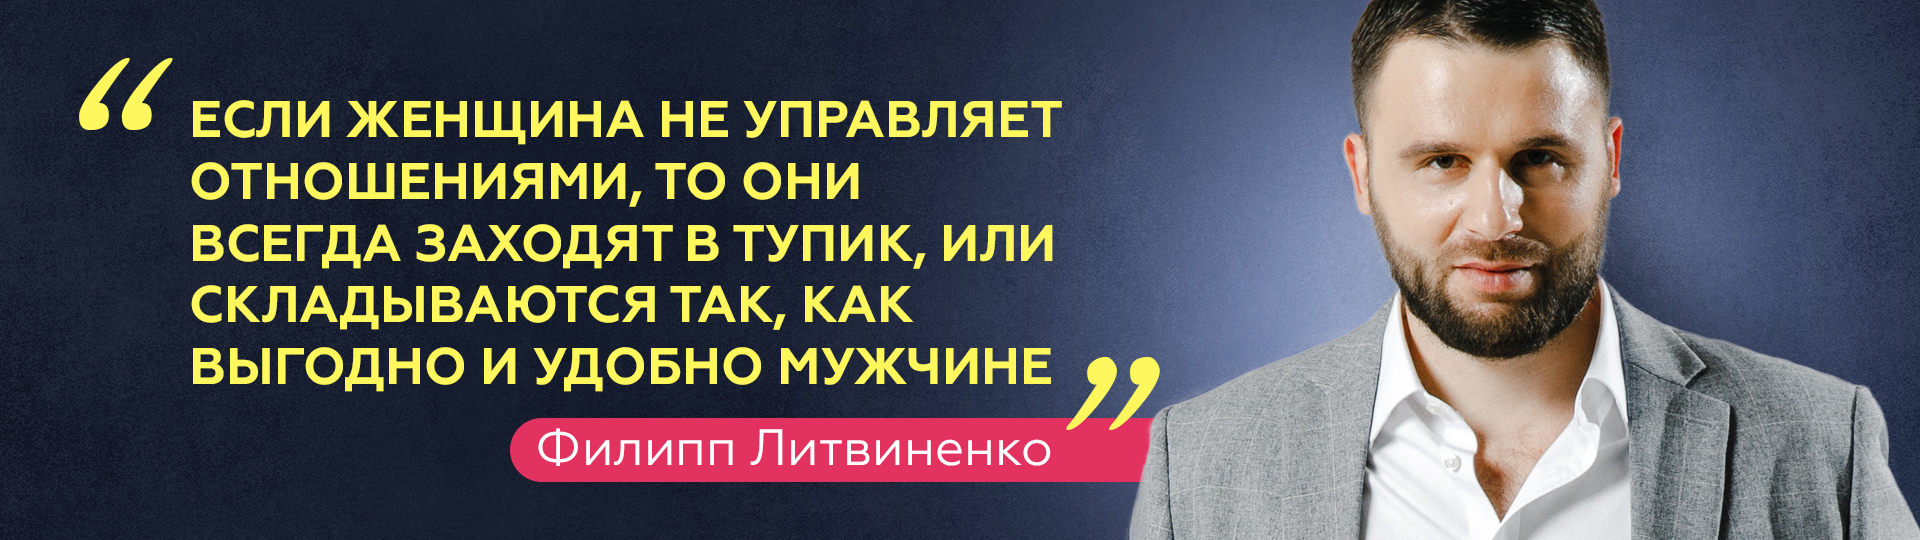 Филипп Литвиненко про отношения